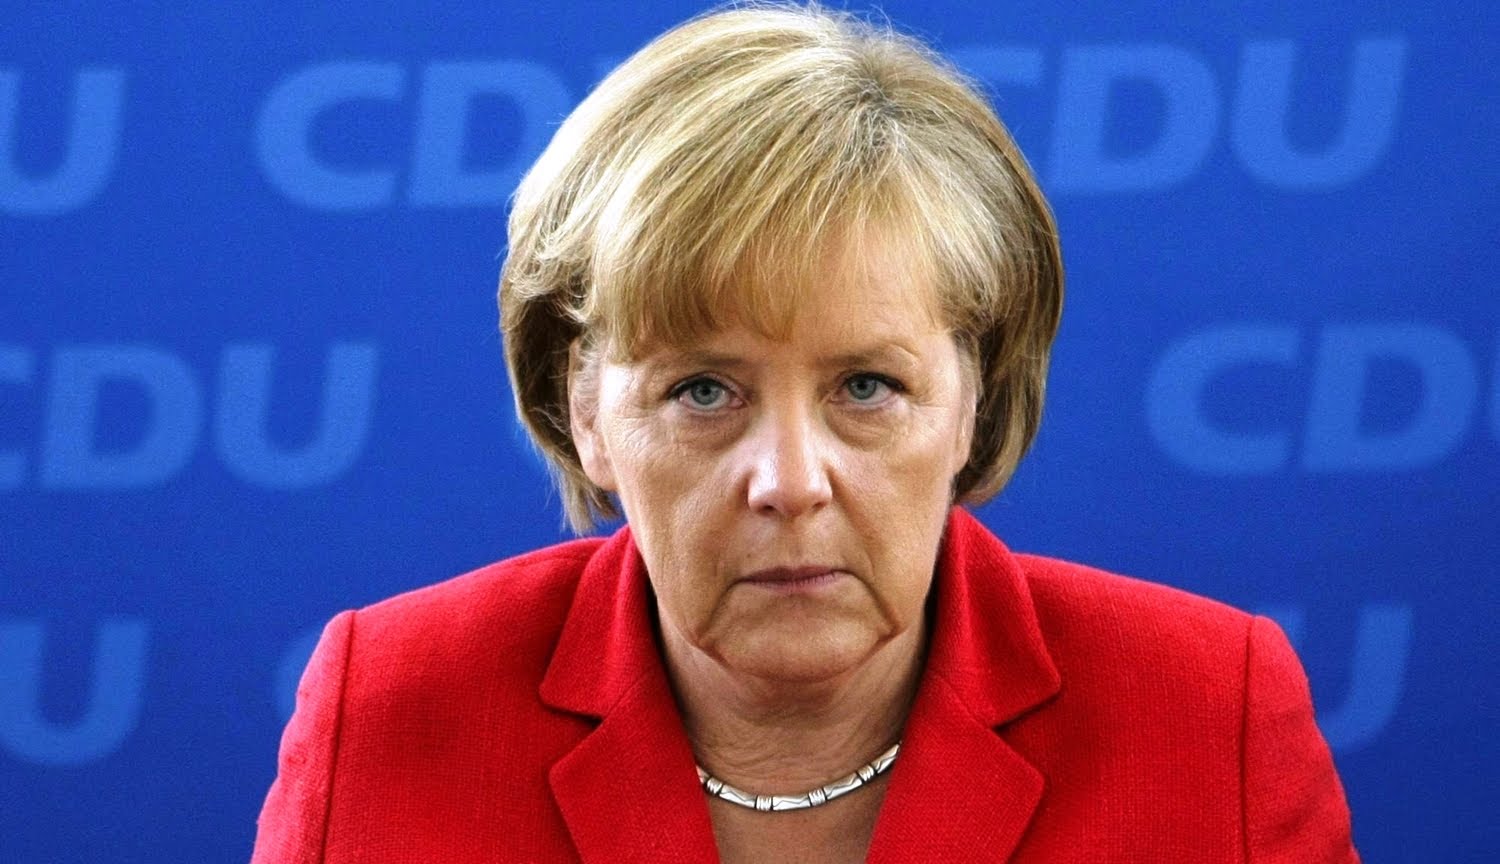 Канцлер Германии Ангела Меркель призвала Украину бороться с коррупцией и уменьшить влияние олигархов, говоря, что немецкие предприятия готовы инвестировать, если будут выполнены соответствующие условия.